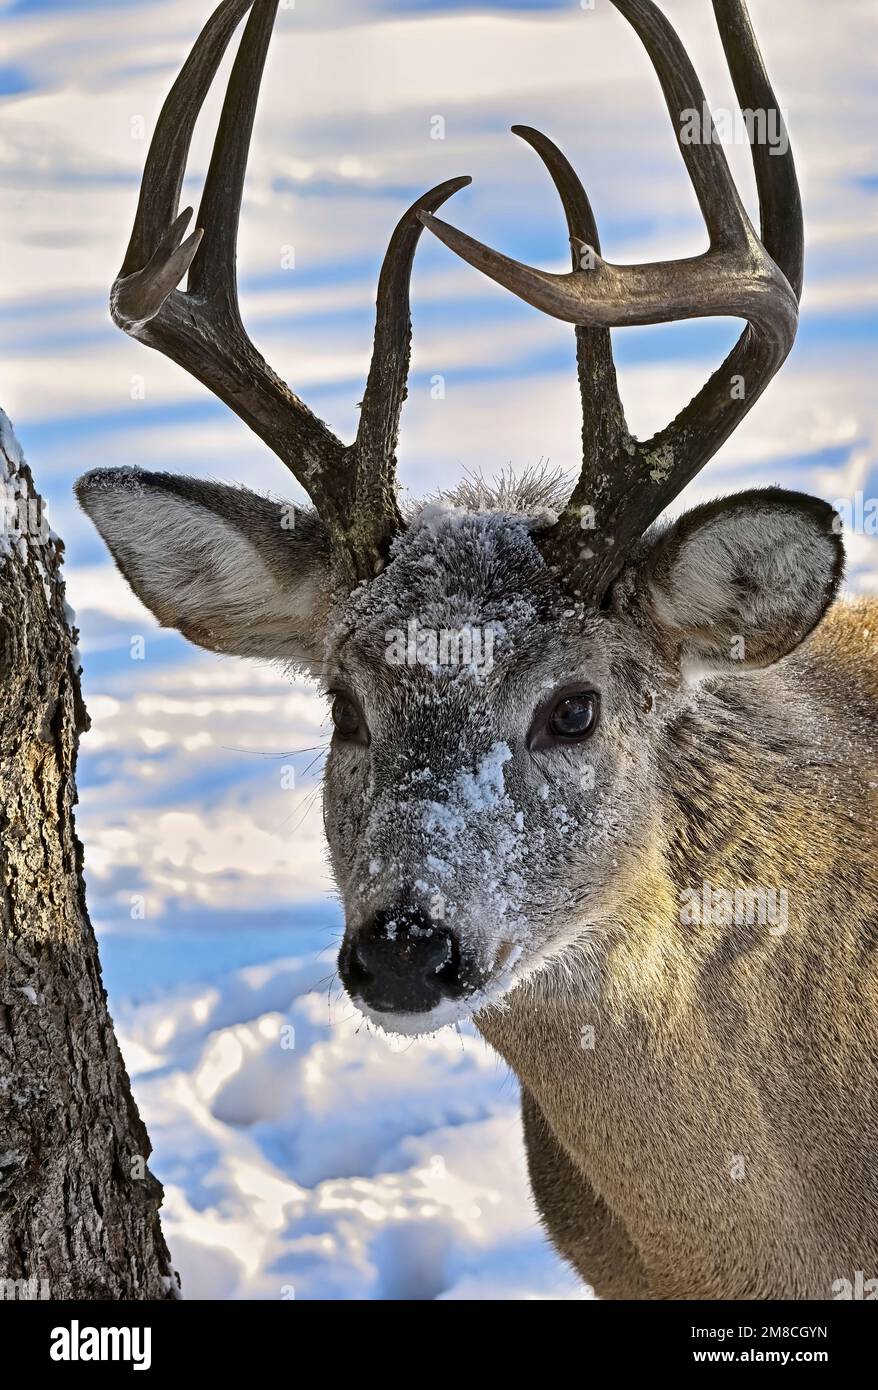 Un cervo maschio adulto dalla coda bianca 'Odocoileus virginianus', con neve fresca sul suo volto nel suo habitat boschivo nella zona rurale Alberta Canada. Foto Stock